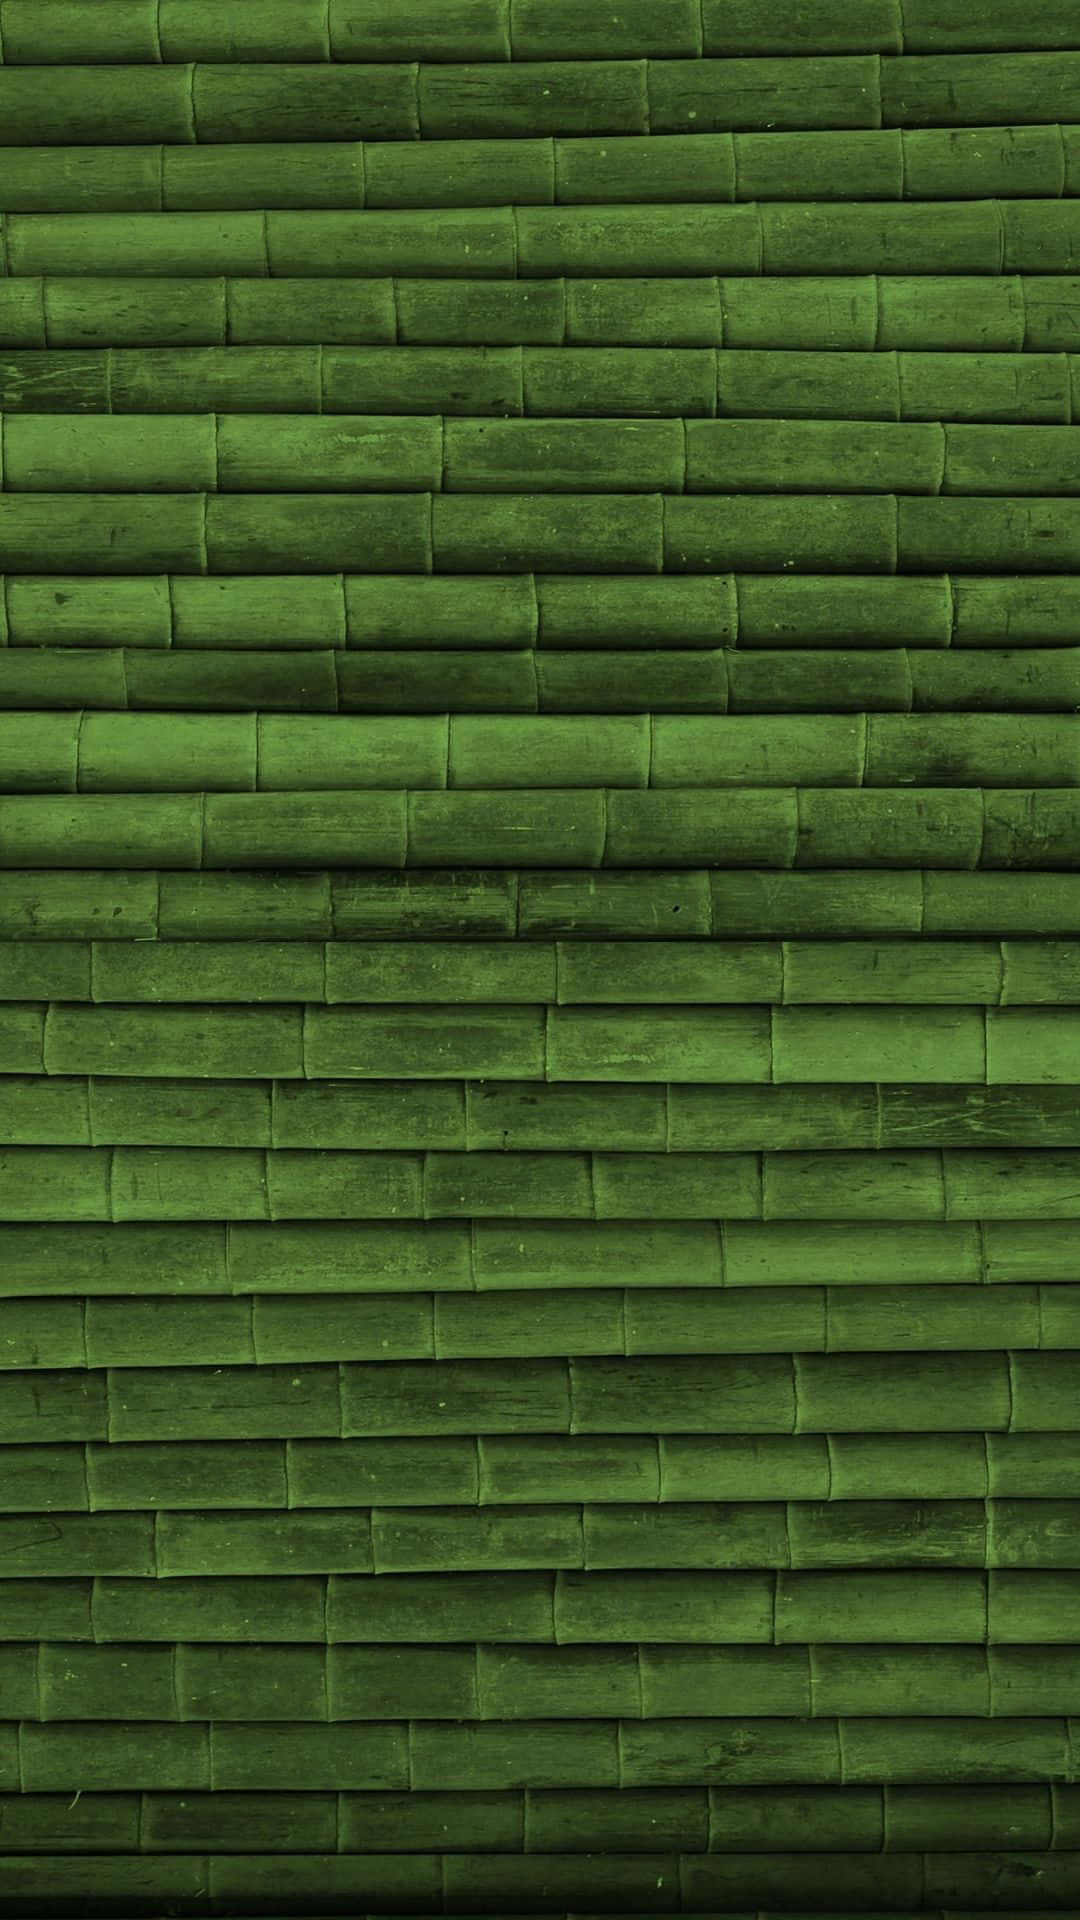 Grøn bamboo plante vokser i et naturligt miljø af sollys. Wallpaper